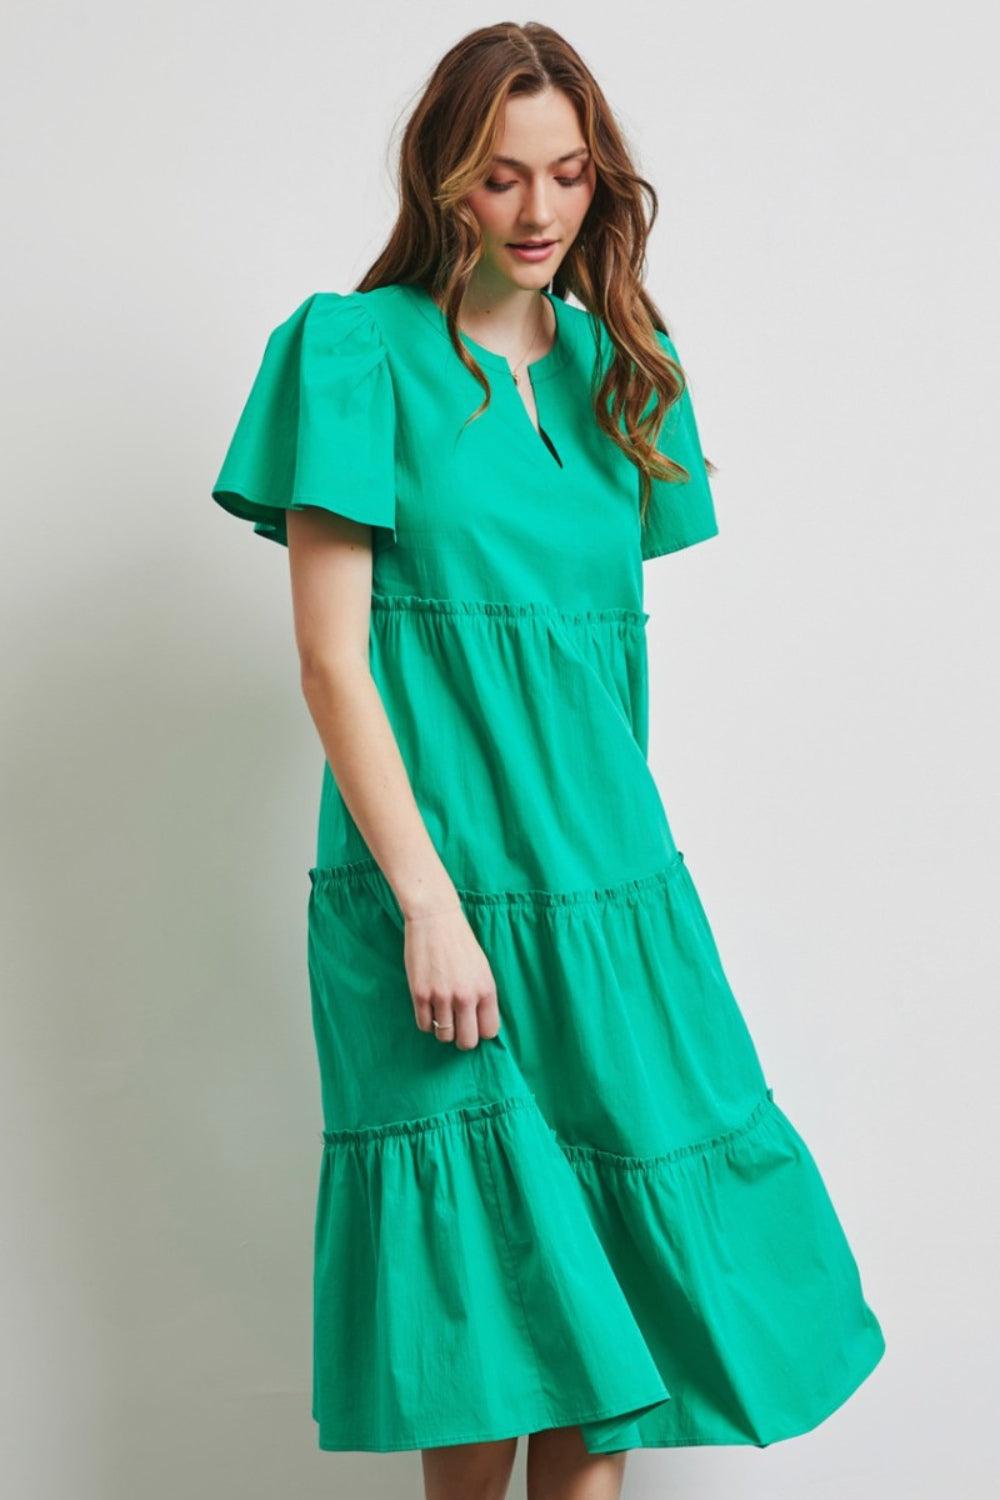 HEYSON Full Size Cotton Poplin Ruffled Tiered Midi Dress - AMIClubwear